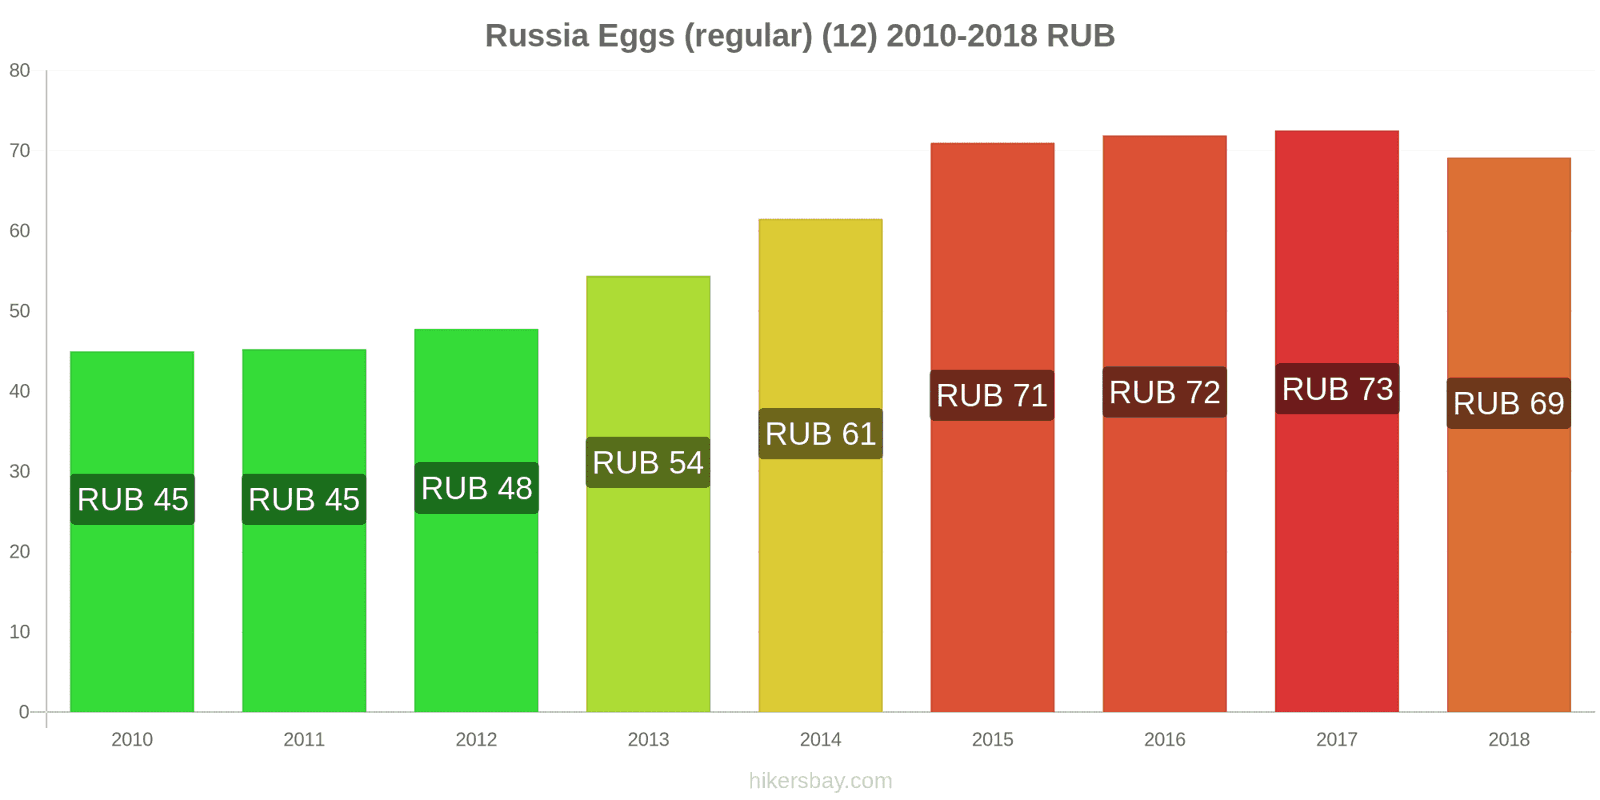 Russia price changes Eggs (regular) (12) hikersbay.com